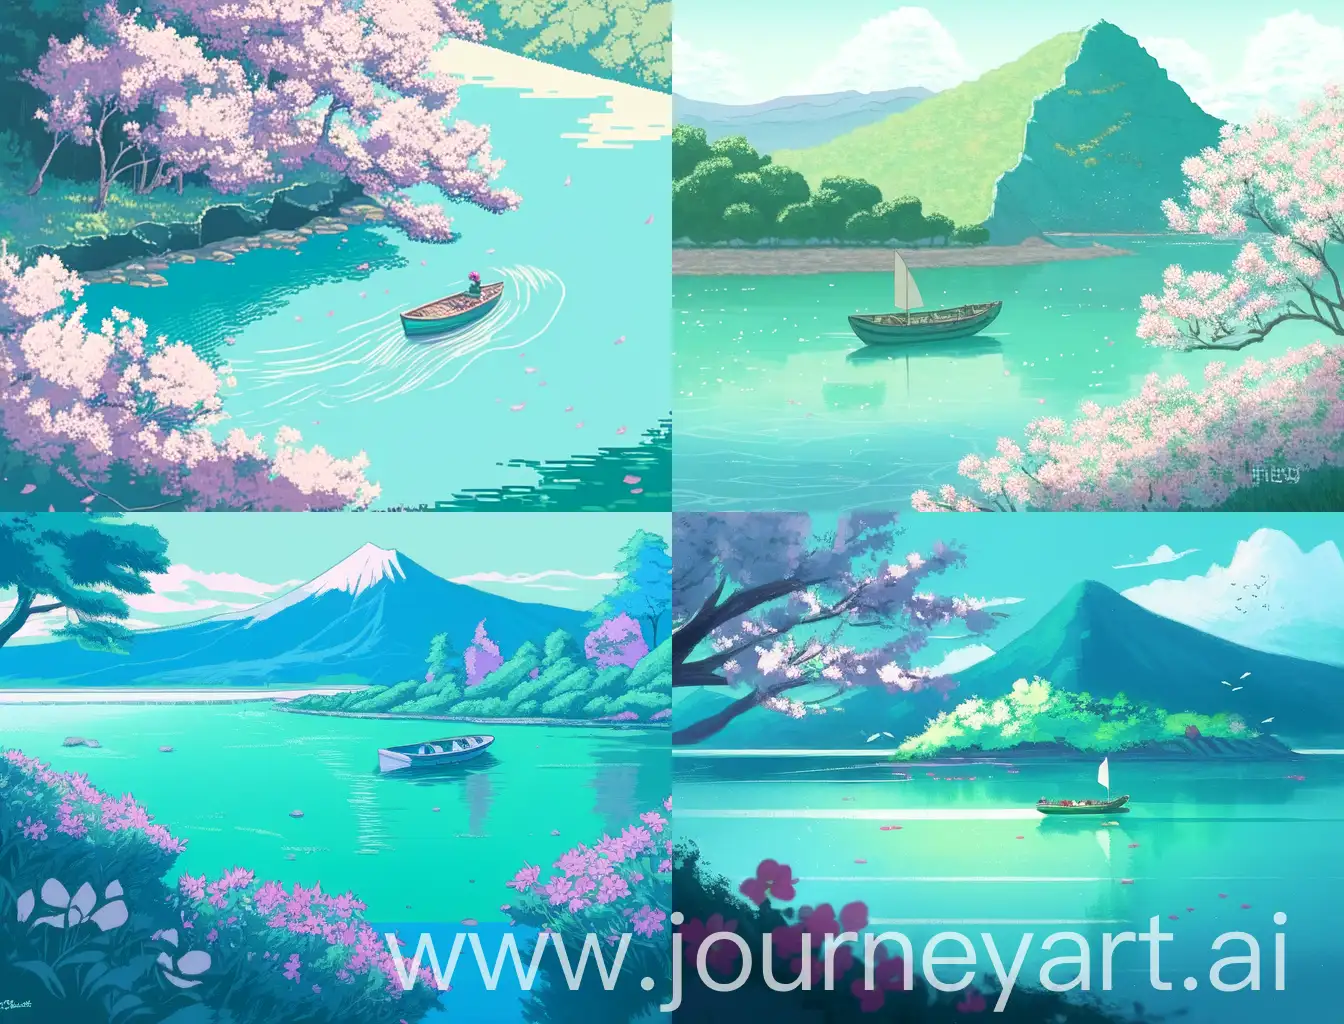 插画风格，远处的山，近处的水，岸边的花和树，水面的小船，画面和谐，整体色调一致，青绿色